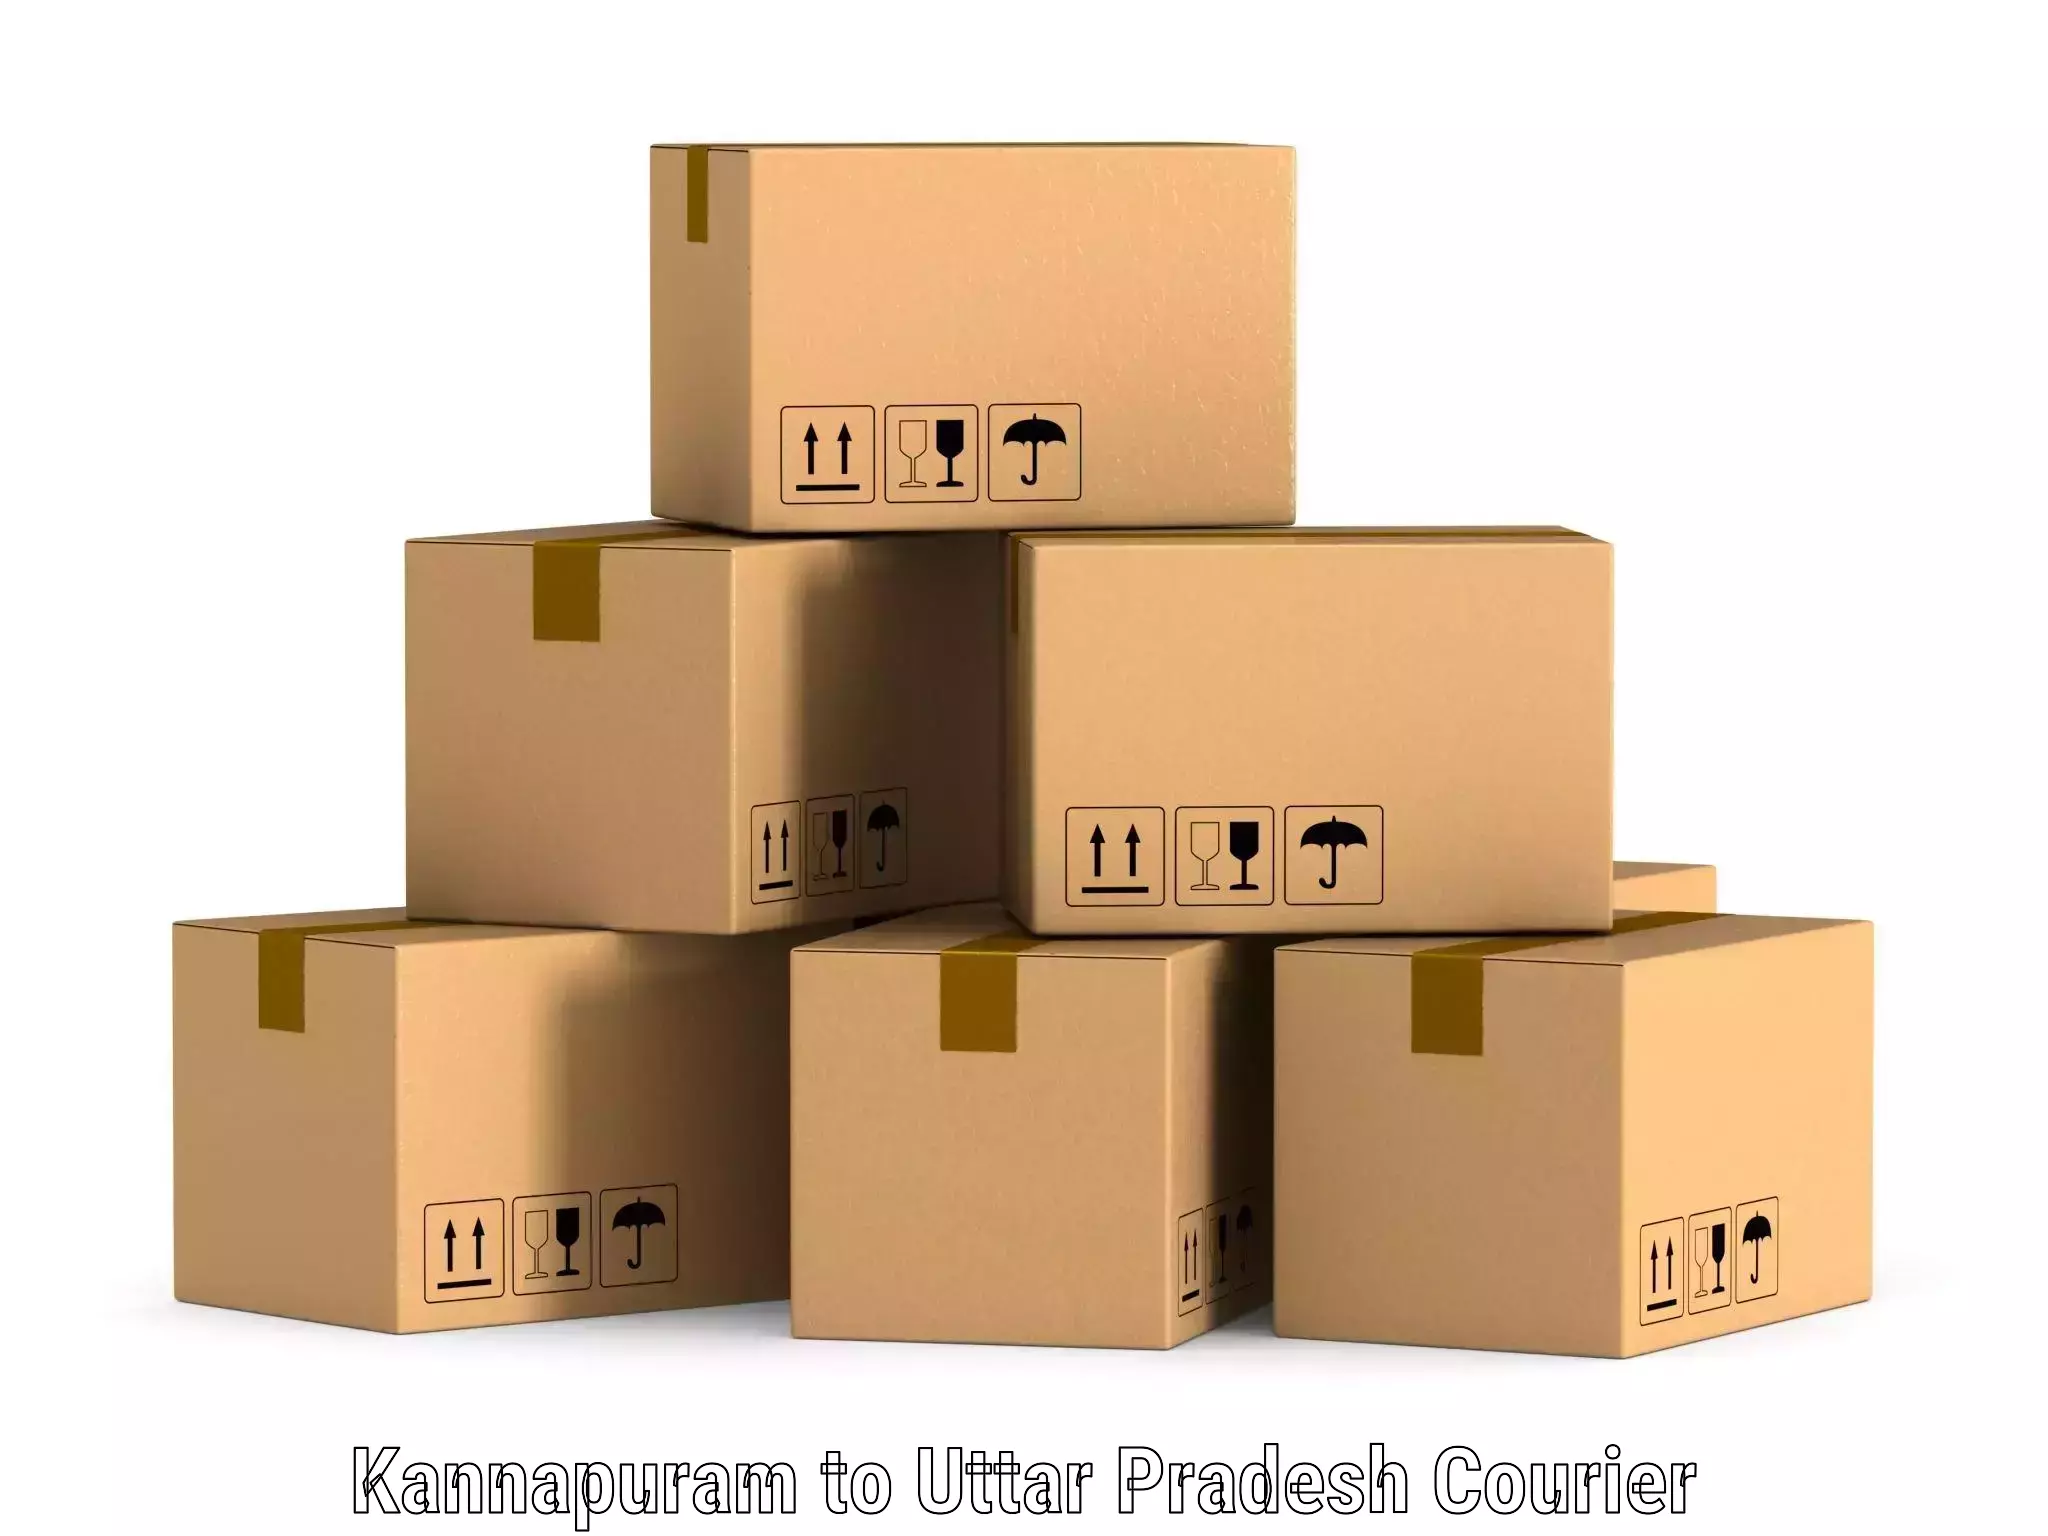 Fast shipping solutions Kannapuram to Dariyabad